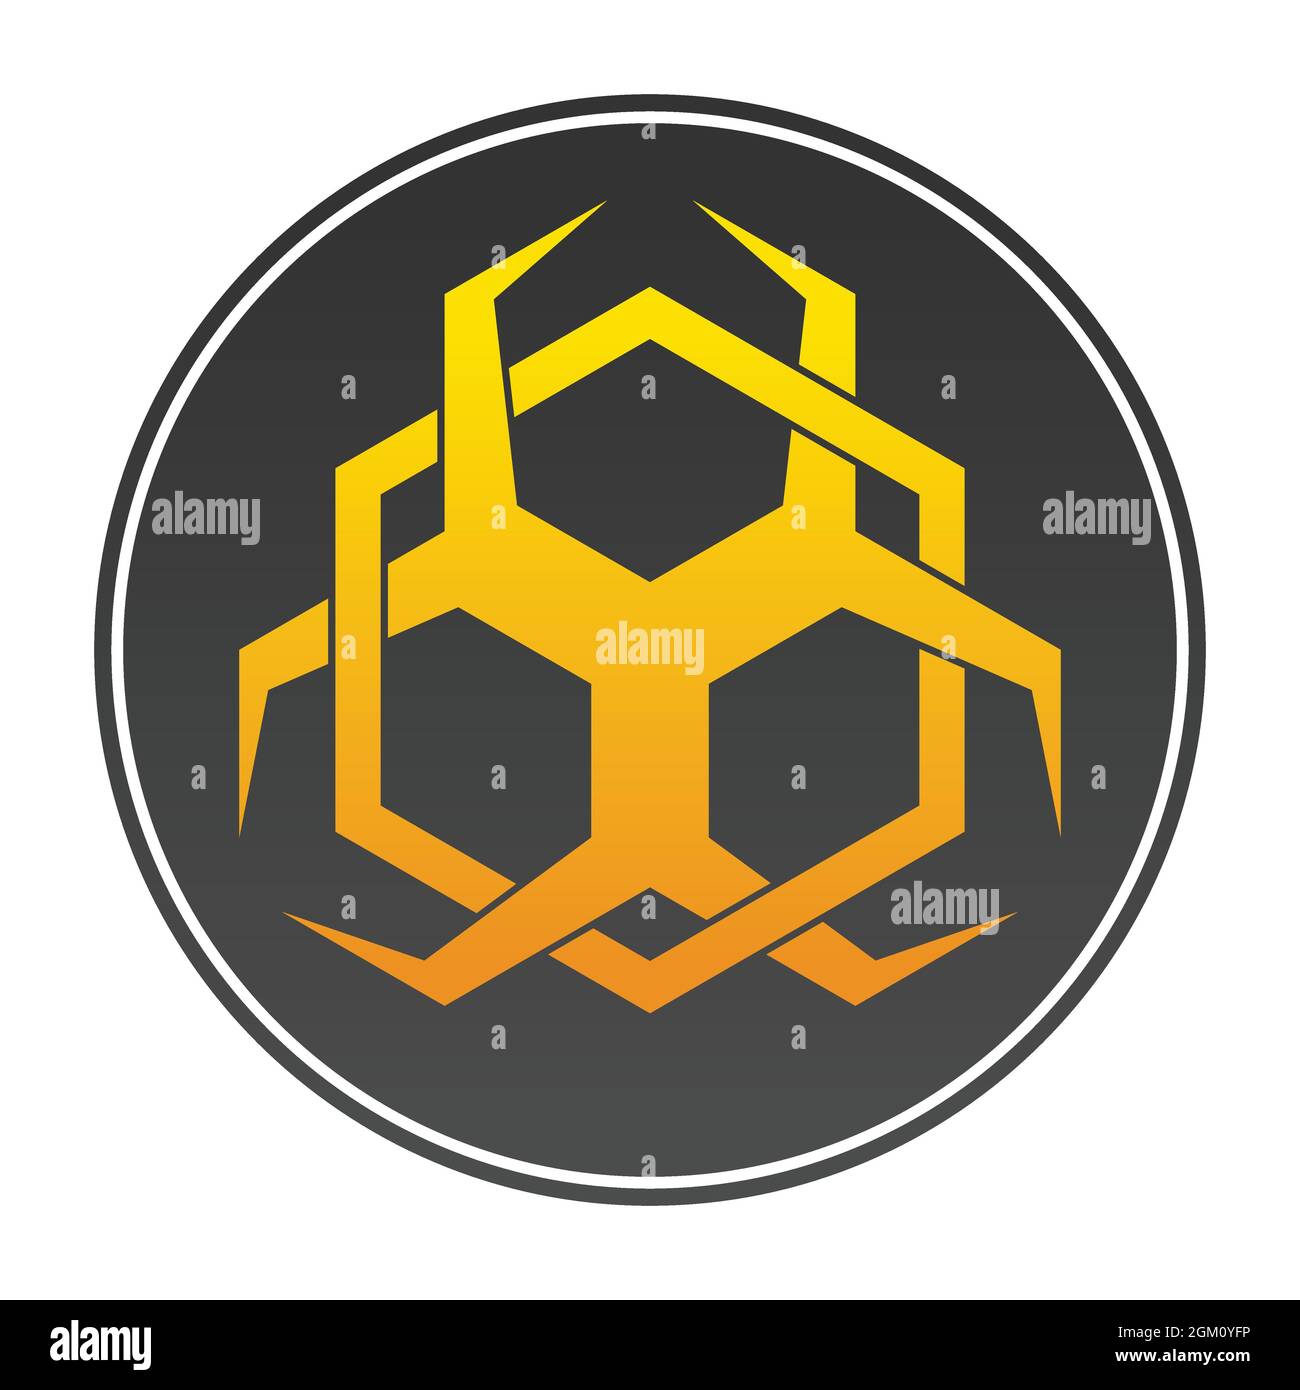 Biohazard symbol vector design with hexagonal geometric figures Stock Vector